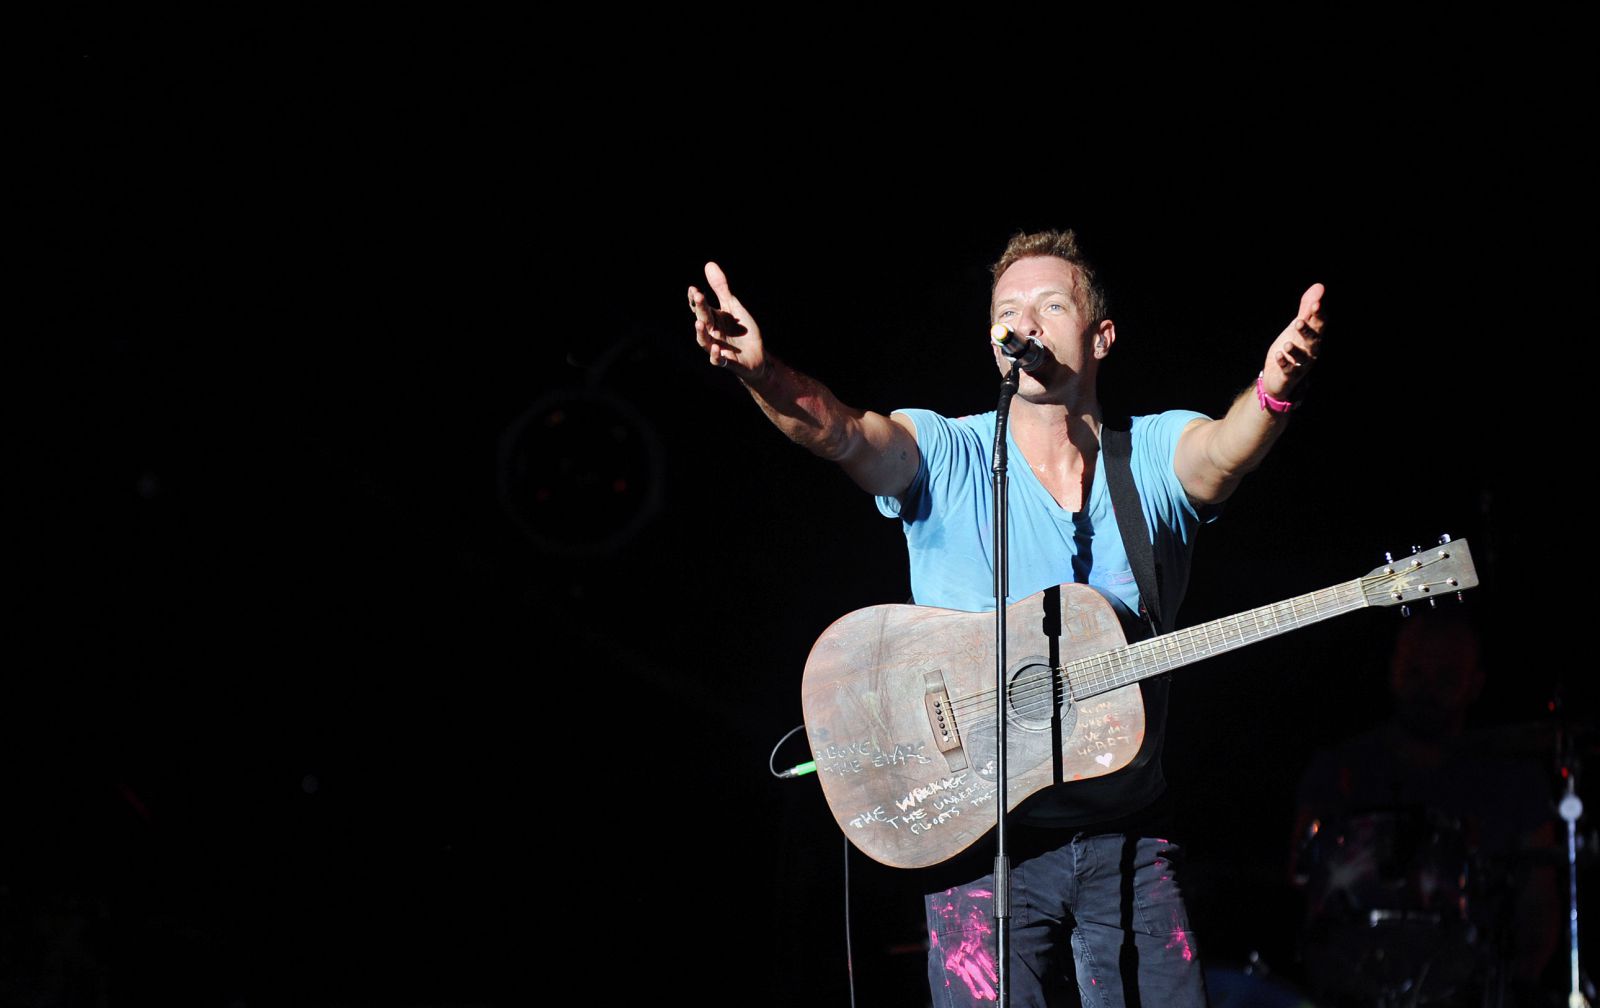 Chris Martin cantando no palco com violão e de braços abertos